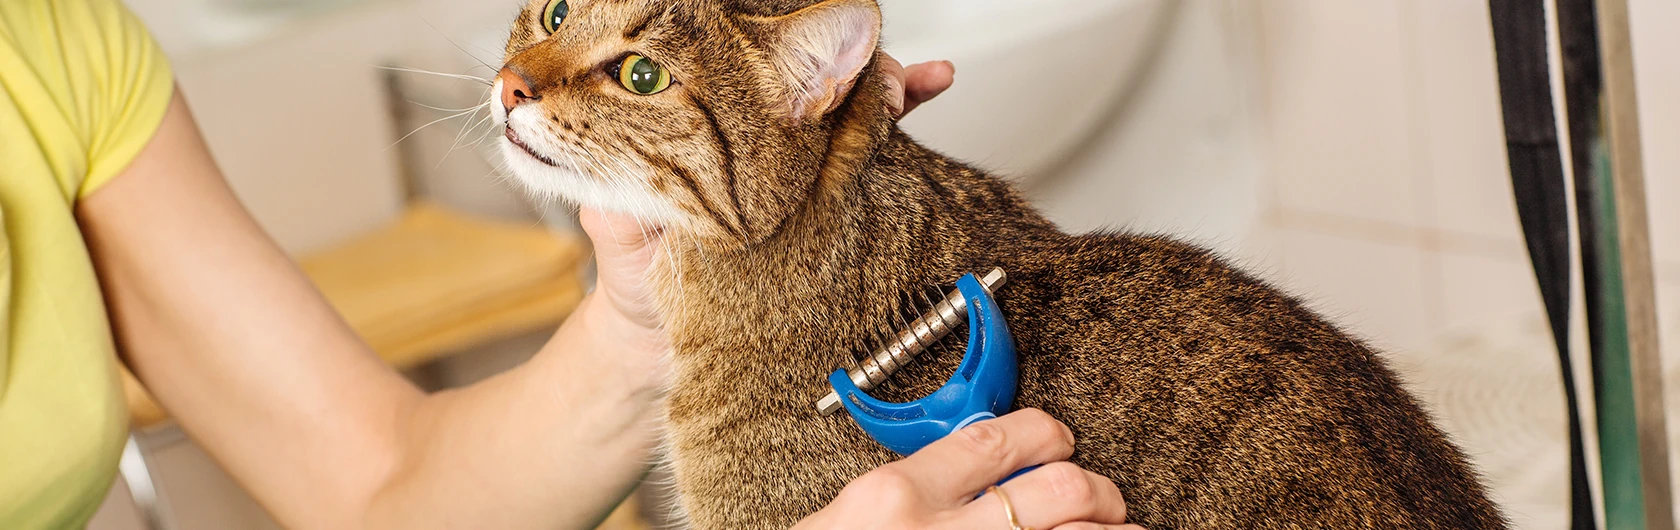 La-higiene-de-gatos-y-comida-para-gatos-de-calidad-nutribon